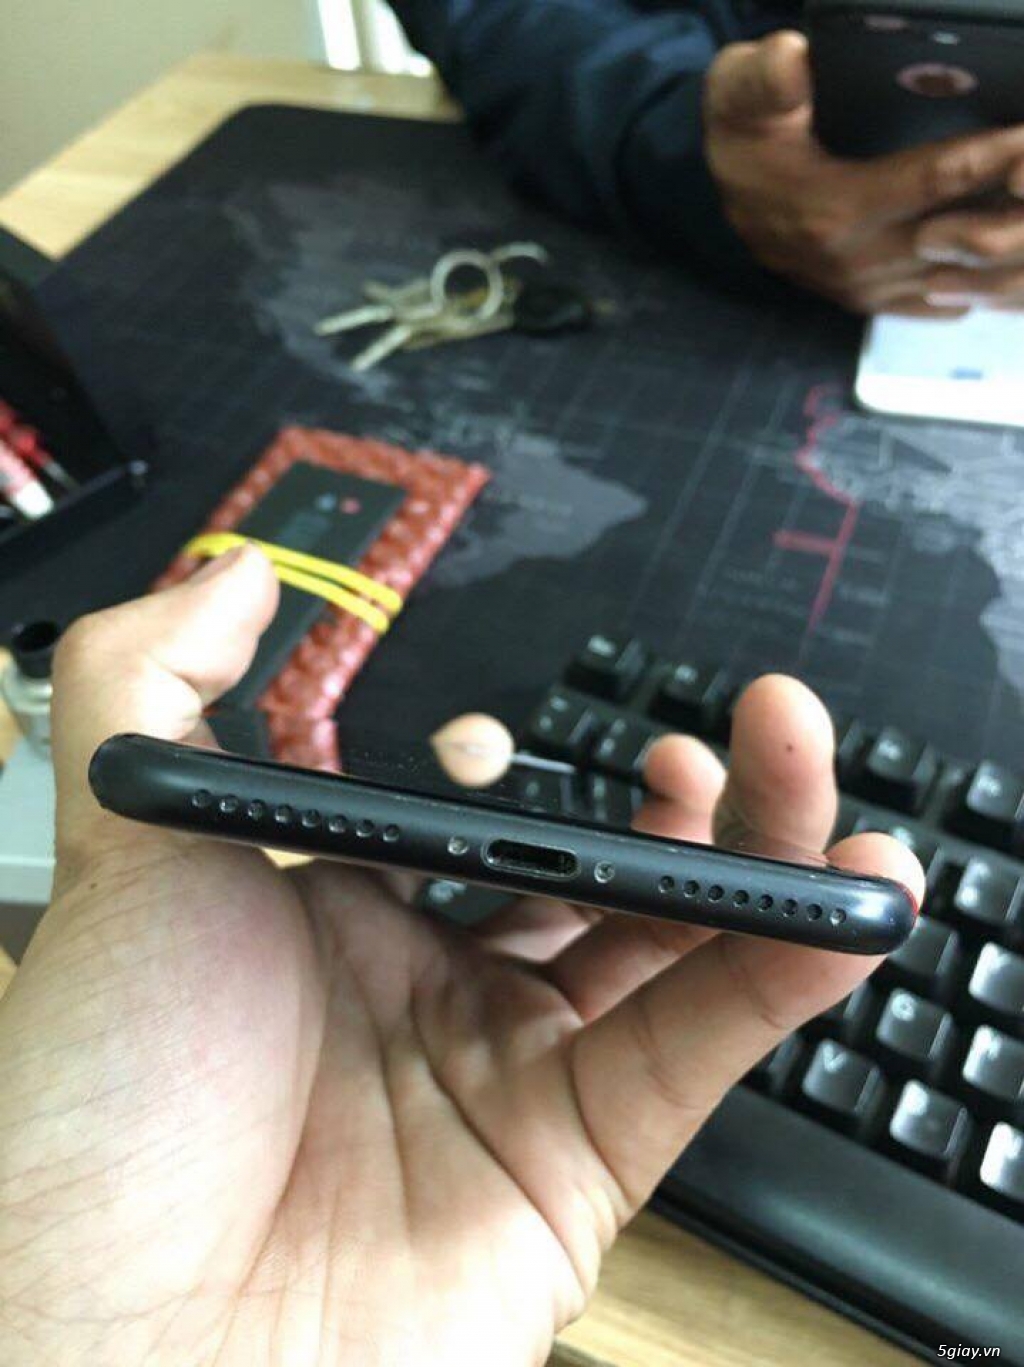 Bán iphone 7plus đen nhám zin keng tại hcm - 4